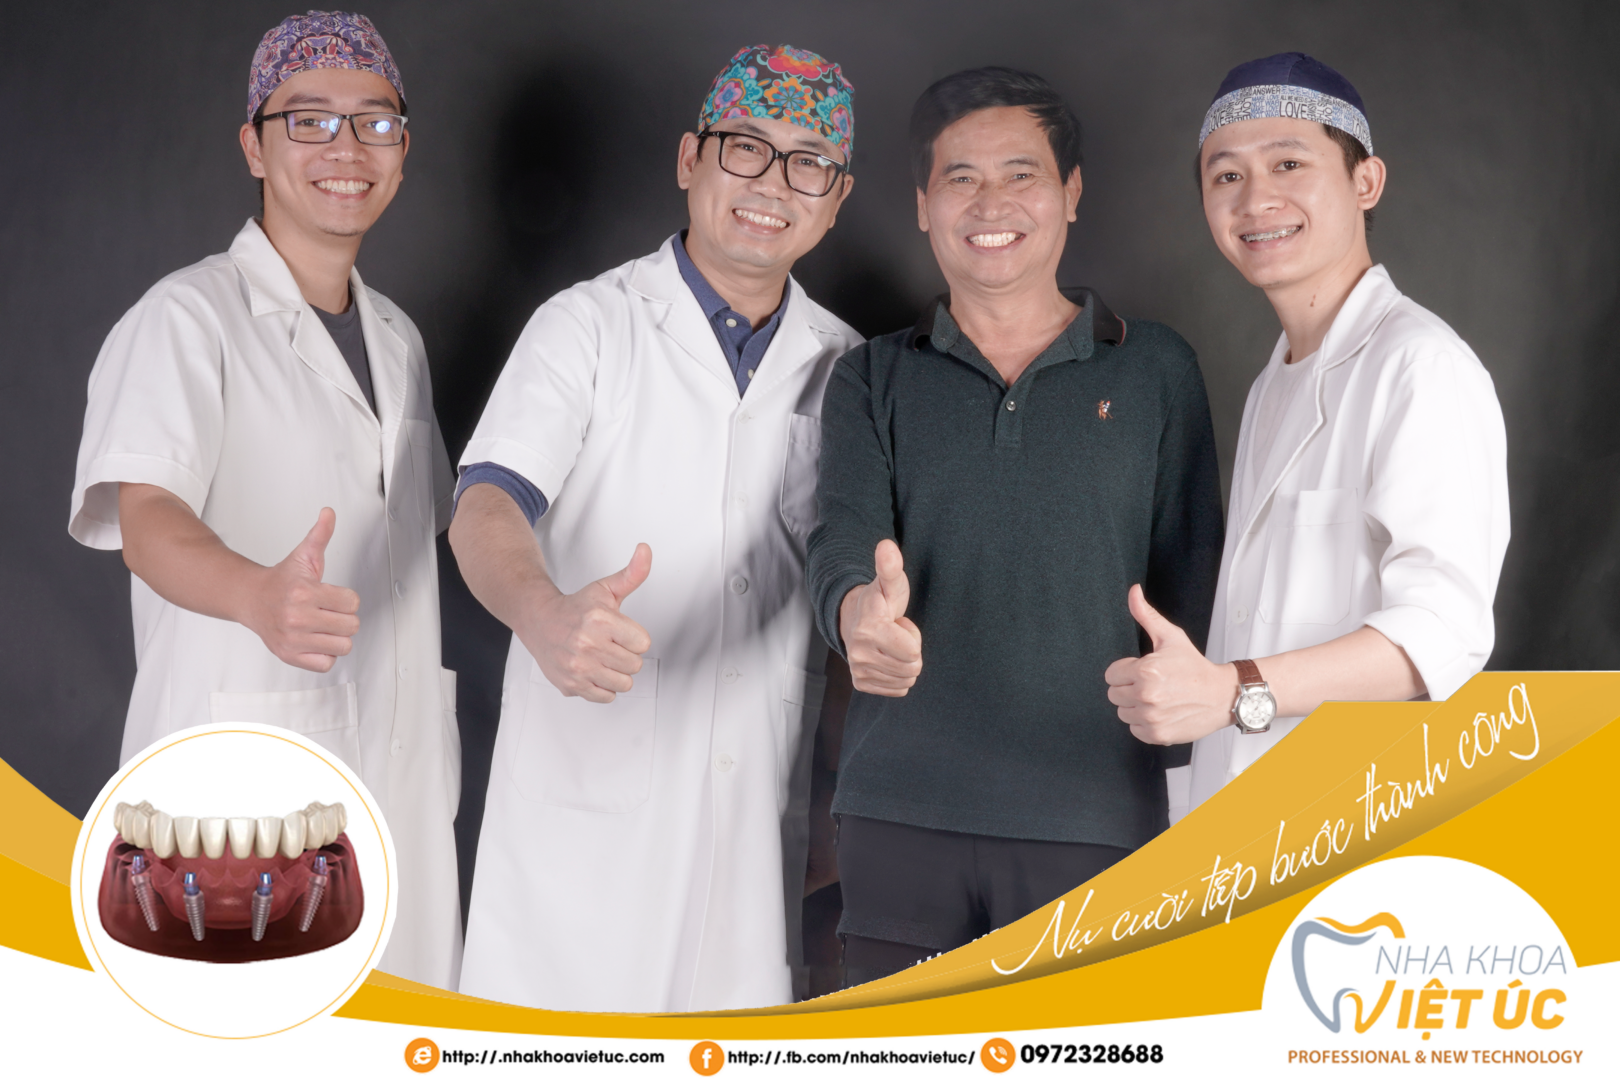 Nha khoa Việt Úc cam kết thăm khám và chăm sóc răng Implant cho mọi người gần như trọn đời